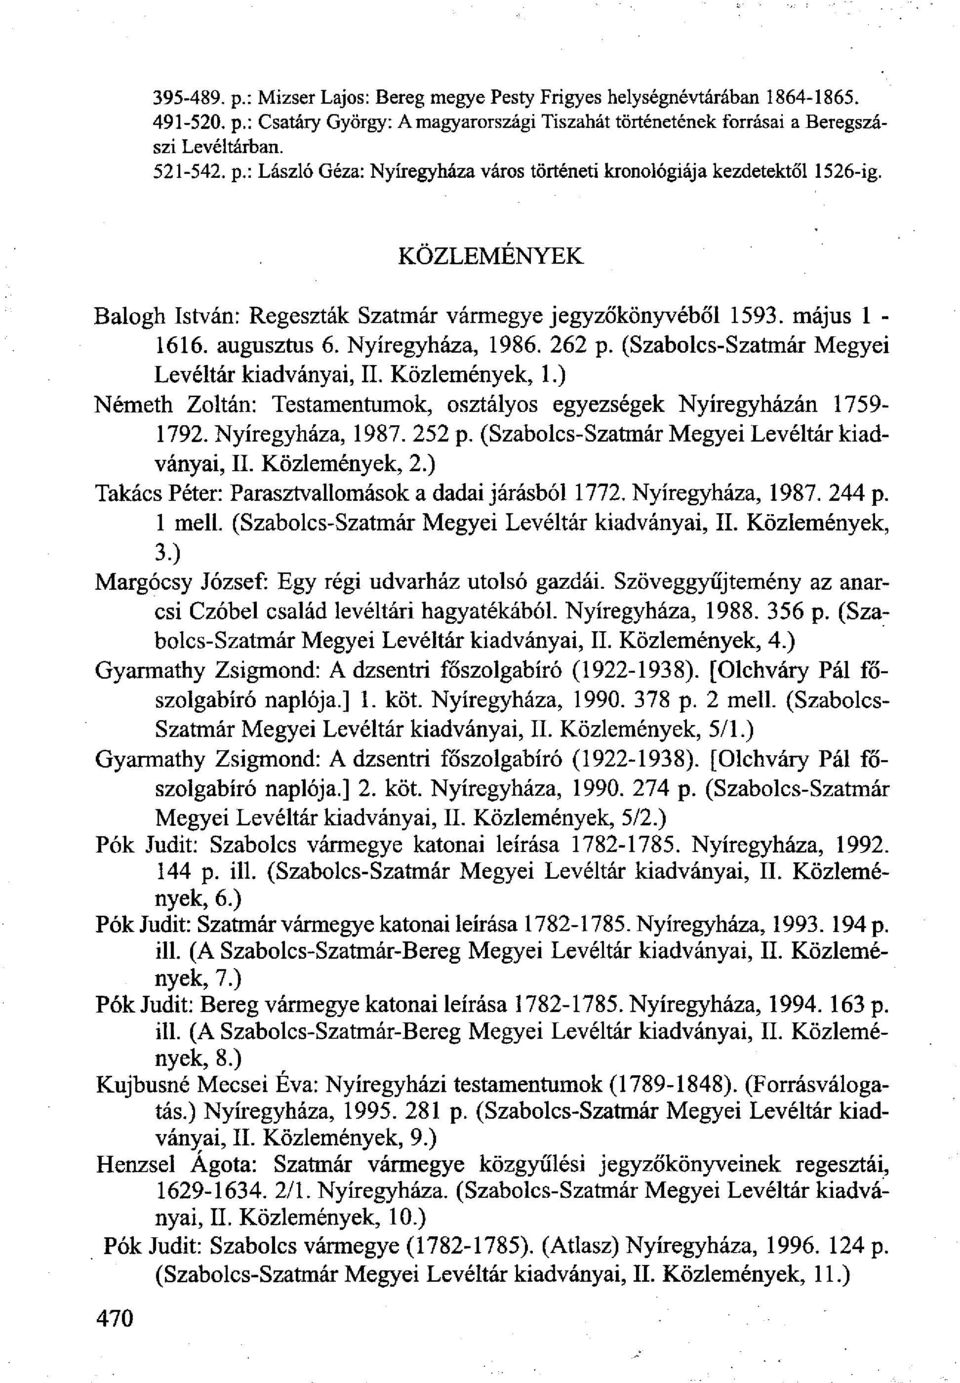 ) Németh Zoltán: Testamentumok, osztályos egyezségek Nyíregyházán 1759-1792. Nyíregyháza, 1987. 252 p. (Szabolcs-Szatmár Megyei Levéltár kiadványai, II. Közlemények, 2.